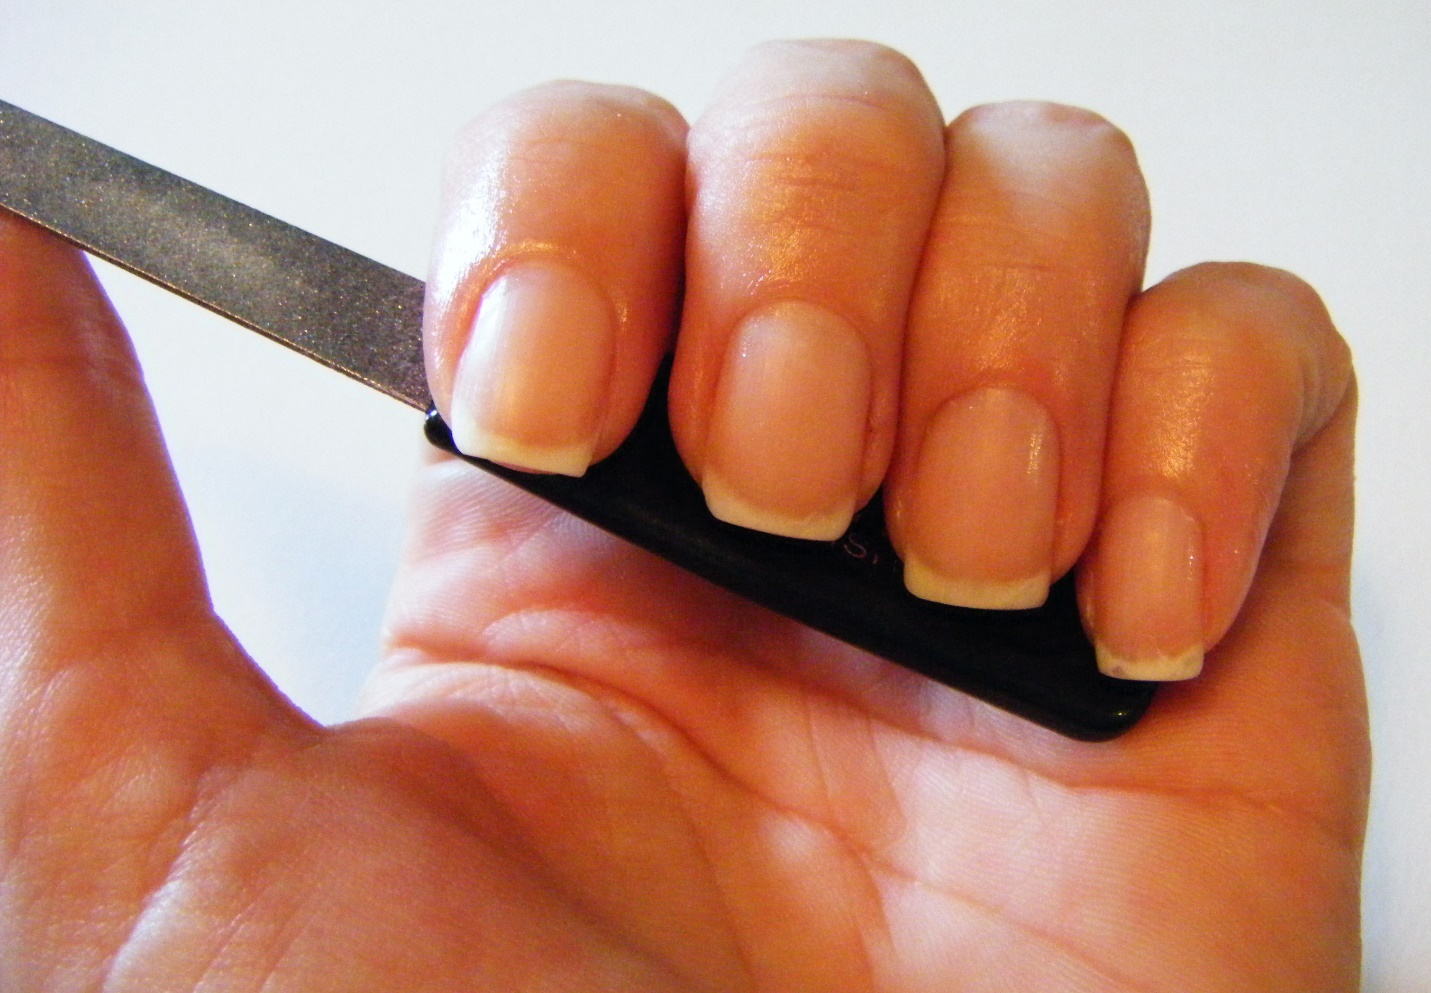 Как сделать форму ногтей "миндаль" в домашних условиях: как правильно пилить ногтевую пластину, какие нужны инструменты, как придать интересный дизайн, видео